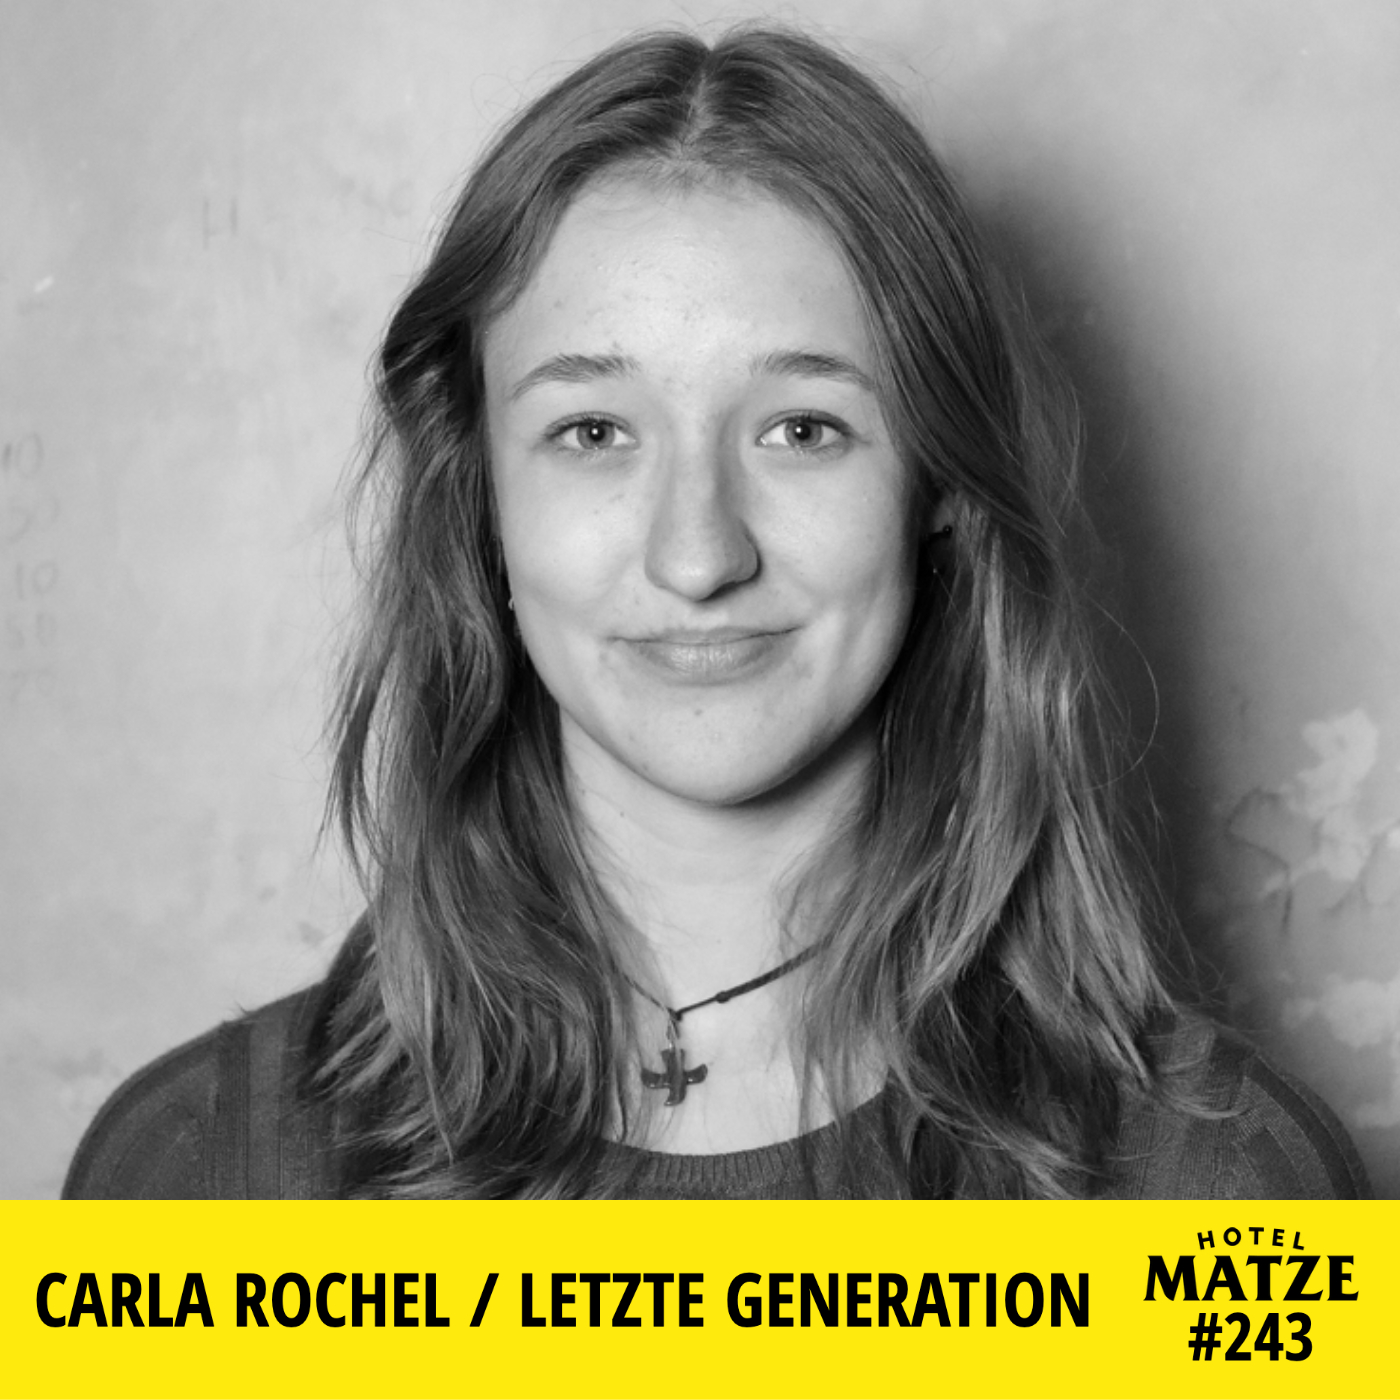 Carla Rochel / Letzte Generation  – Wie hat der Protest dich verändert?